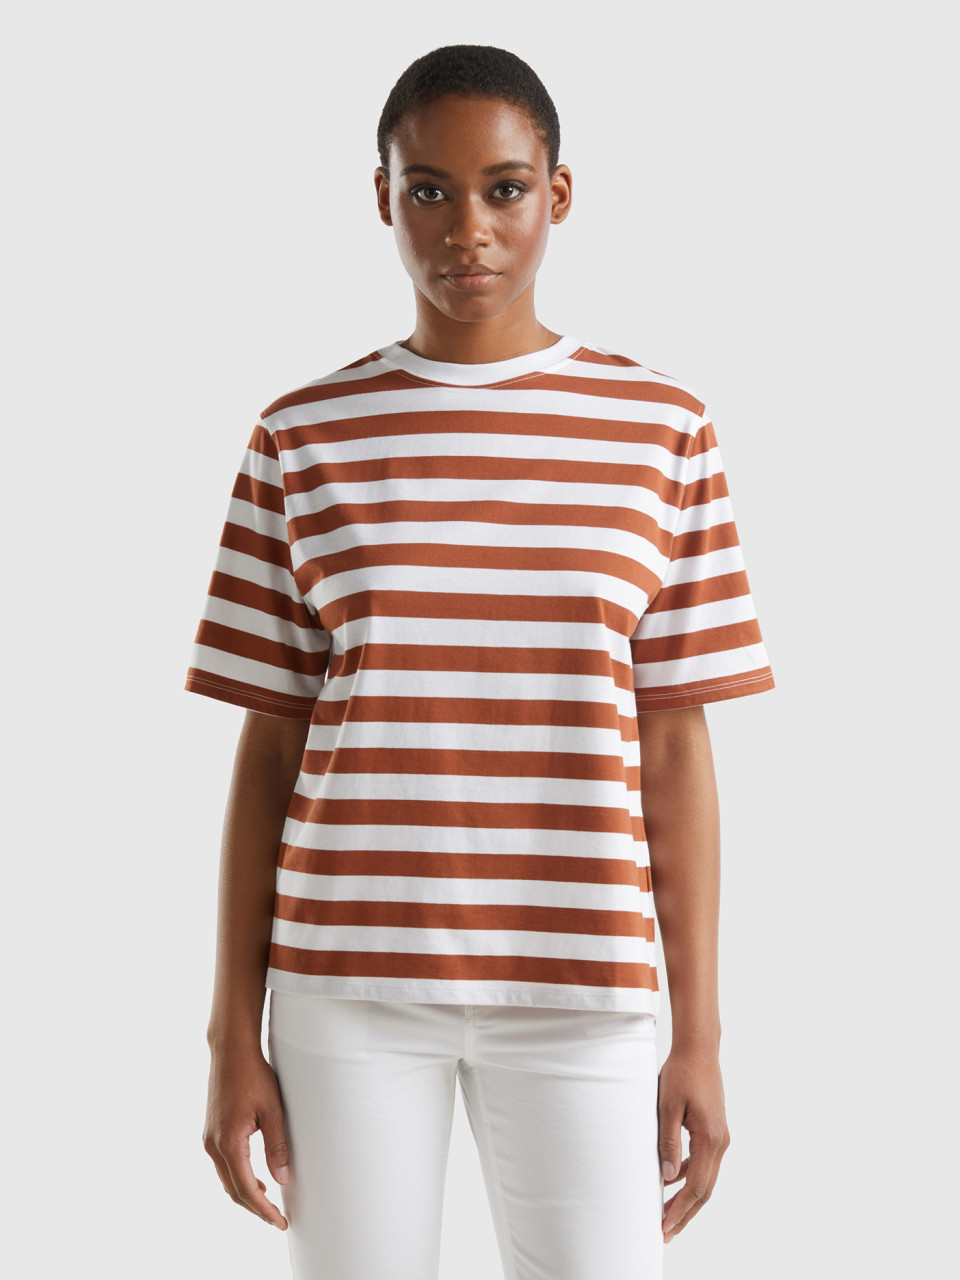 Benetton, Striped Comfort Fit T-shirt, Brown, Women